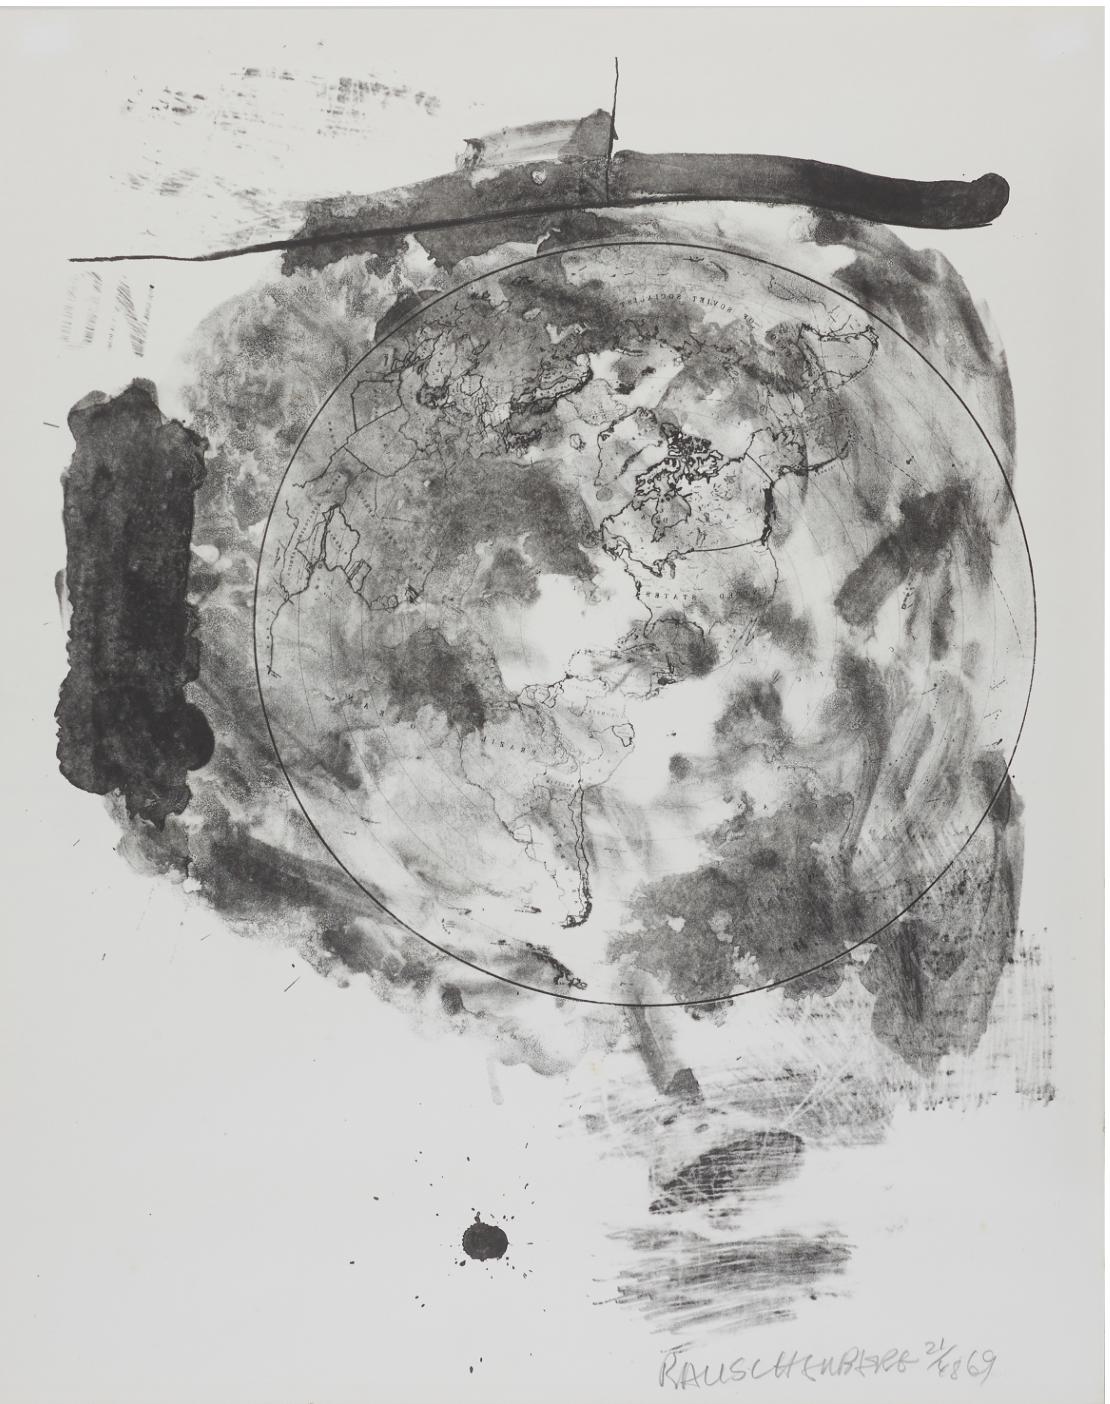 Robert Rauschenberg (né en 1925) : Médaillon de la série Stoned Moon, 1969, signé, numéroté et daté Rauschenberg 21/48, -69. Édité par Gemini GEL (cachet aveugle), lithographie 81,3 x 64,8 cm. (32